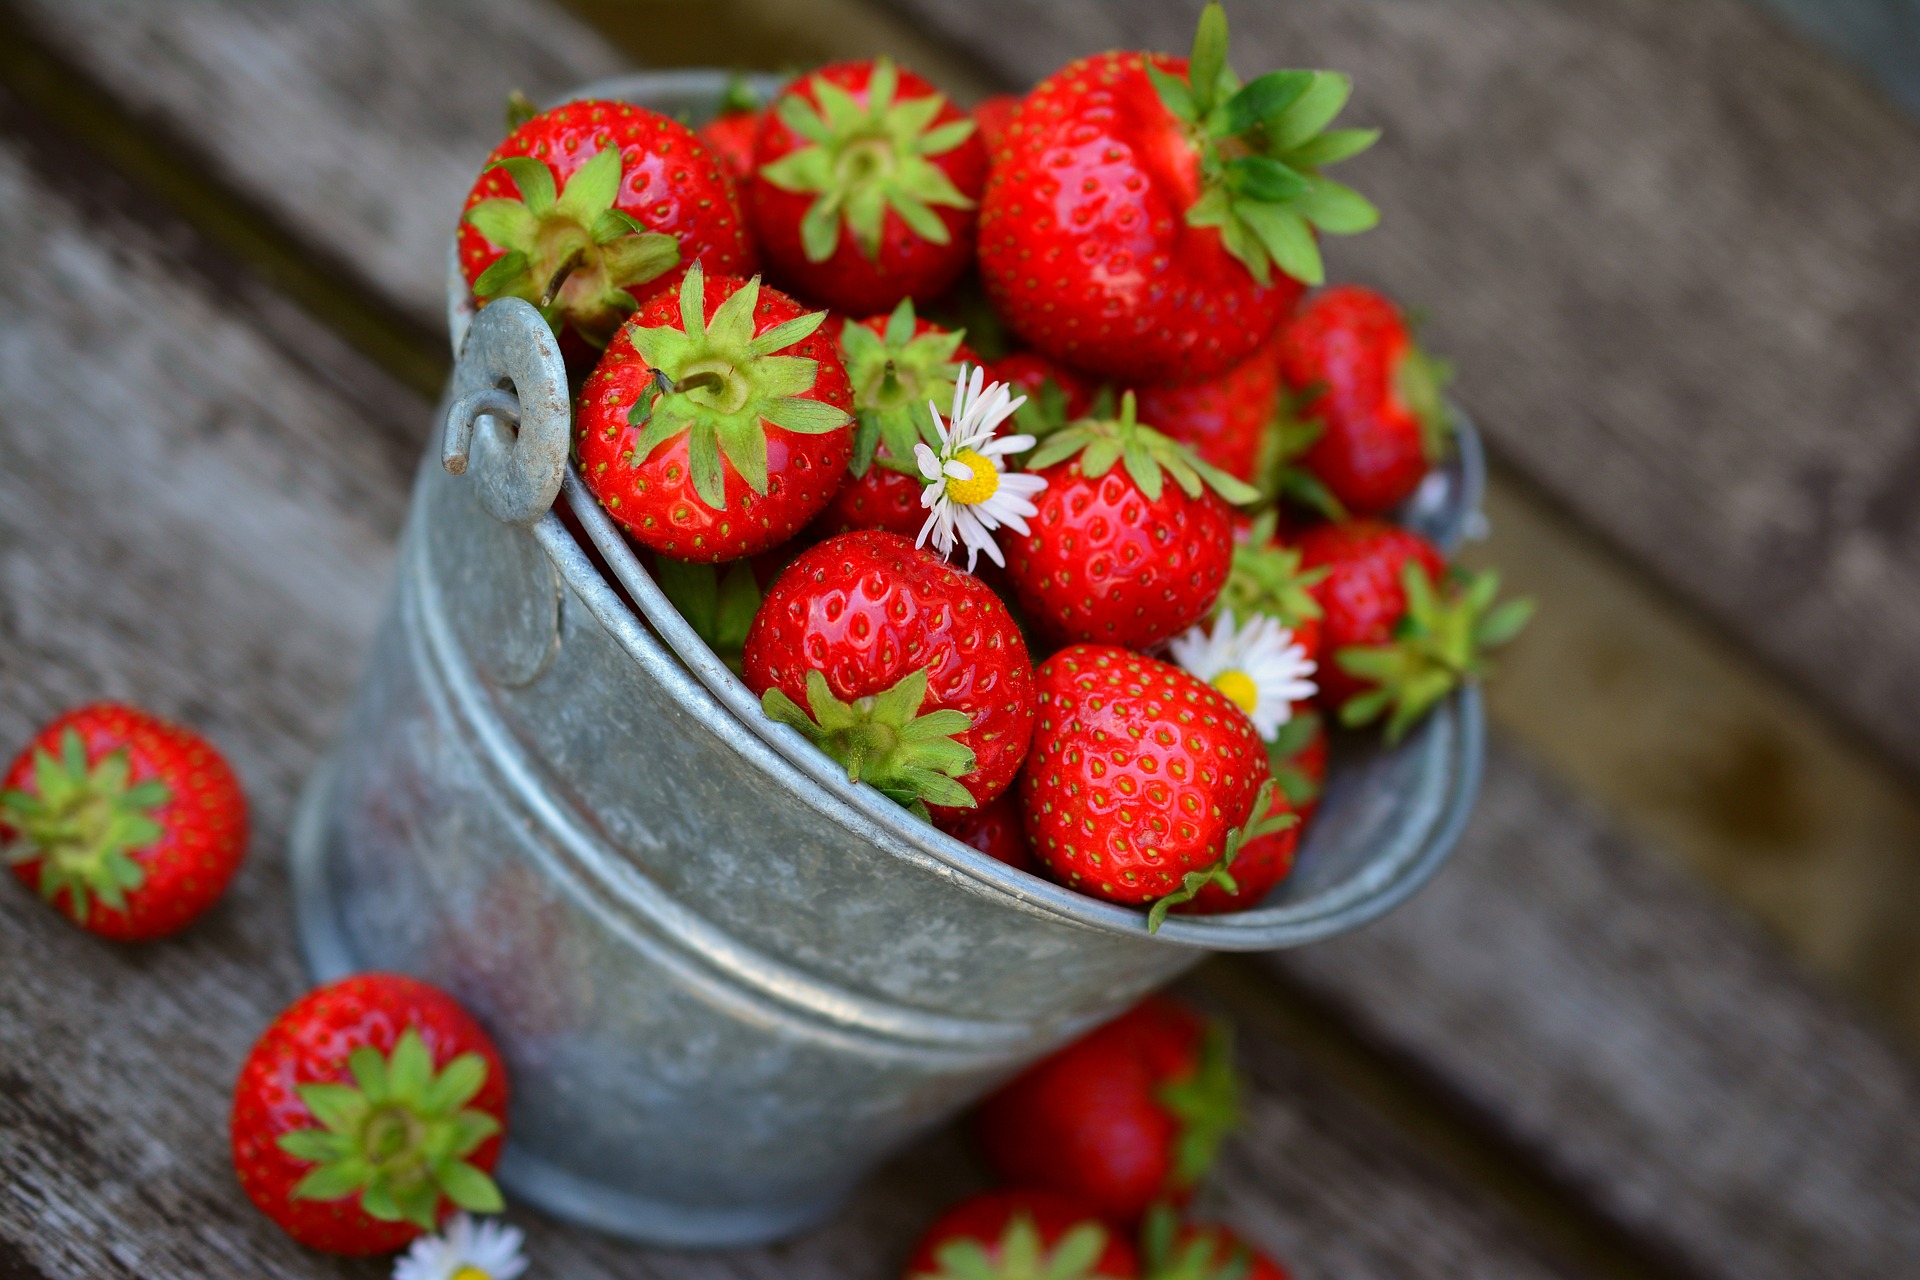 strawberries-3431122_1920 (002)